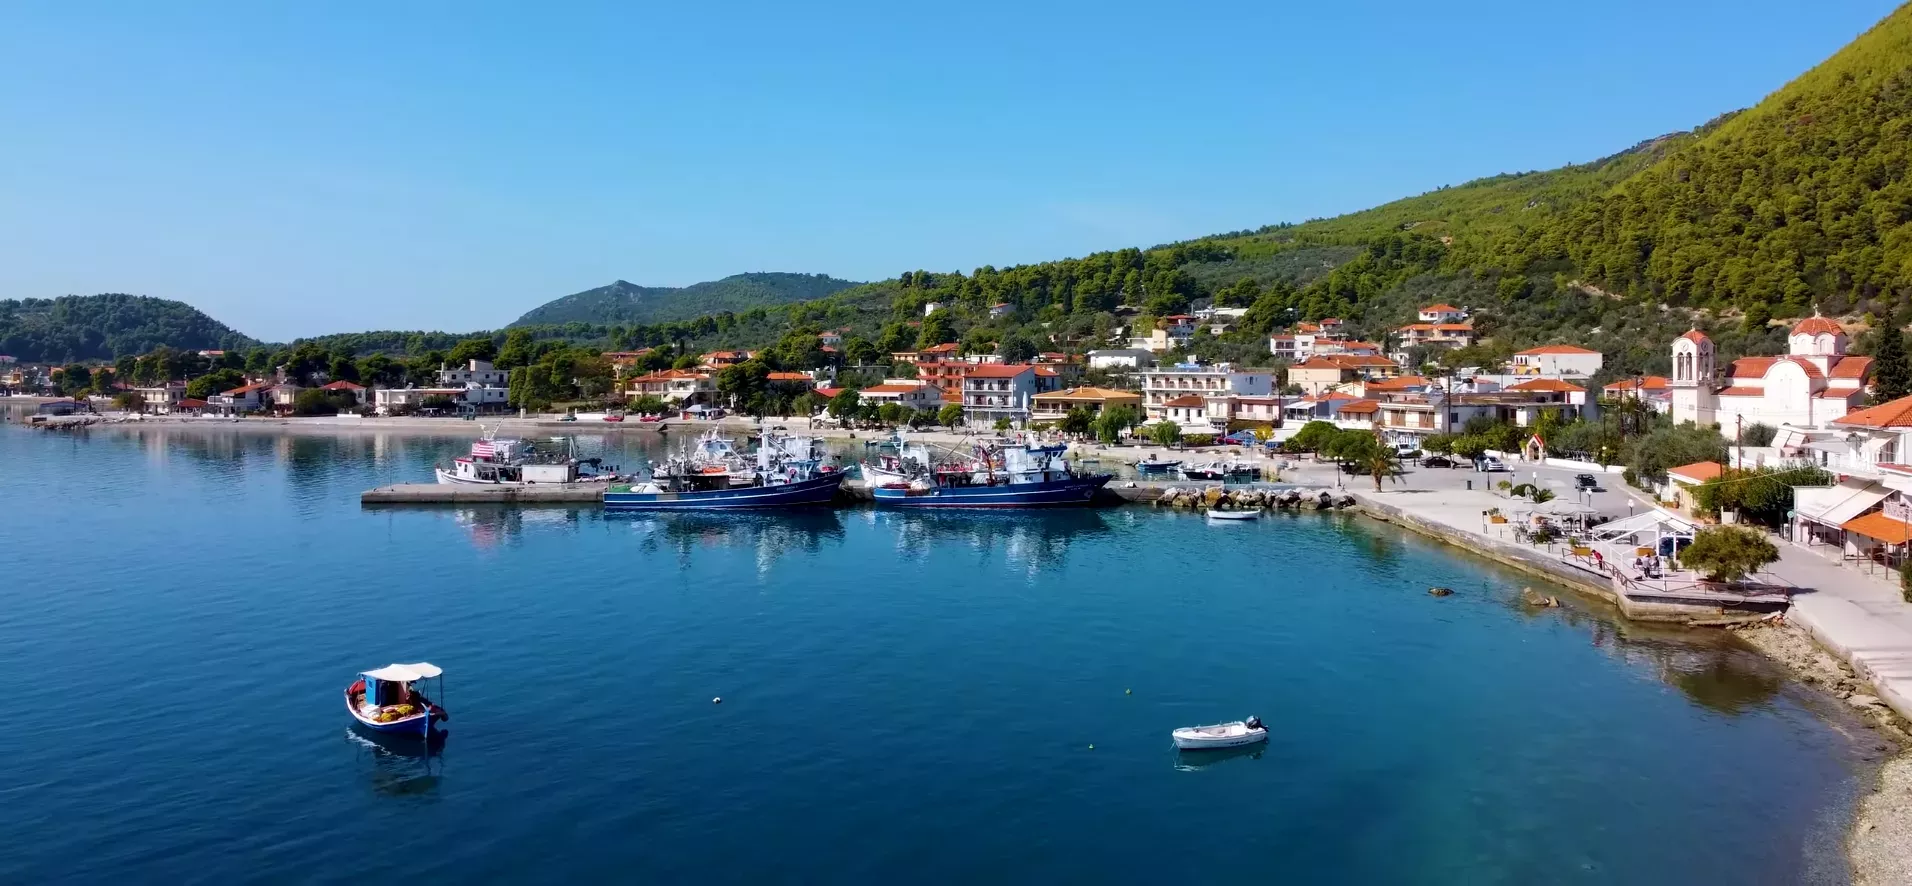 Άγιος Γεώργιος: Το ιδανικό ψαροχώρι για ήρεμες καλοκαιρινές διακοπές στη Βόρεια Εύβοια